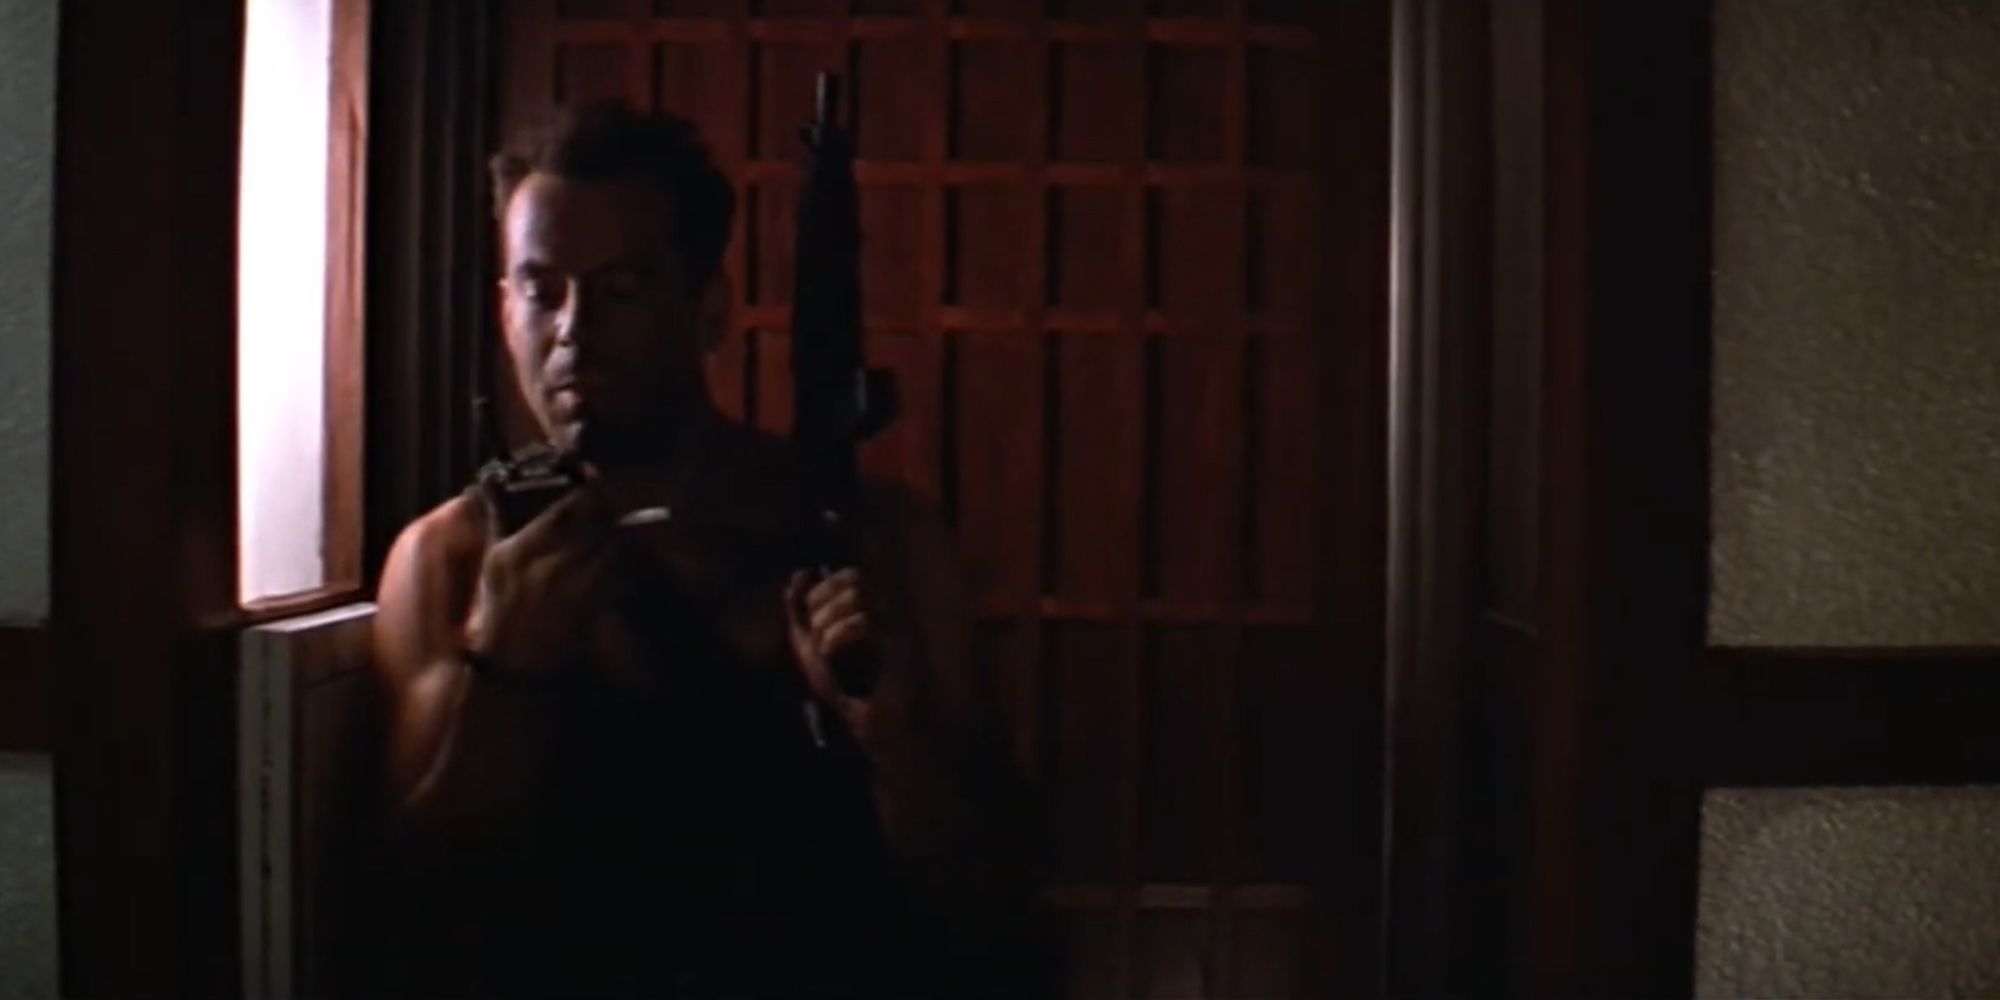 "Yippee Ki-Yay, Motherf***er" - John McClane, Die Hard (1989)